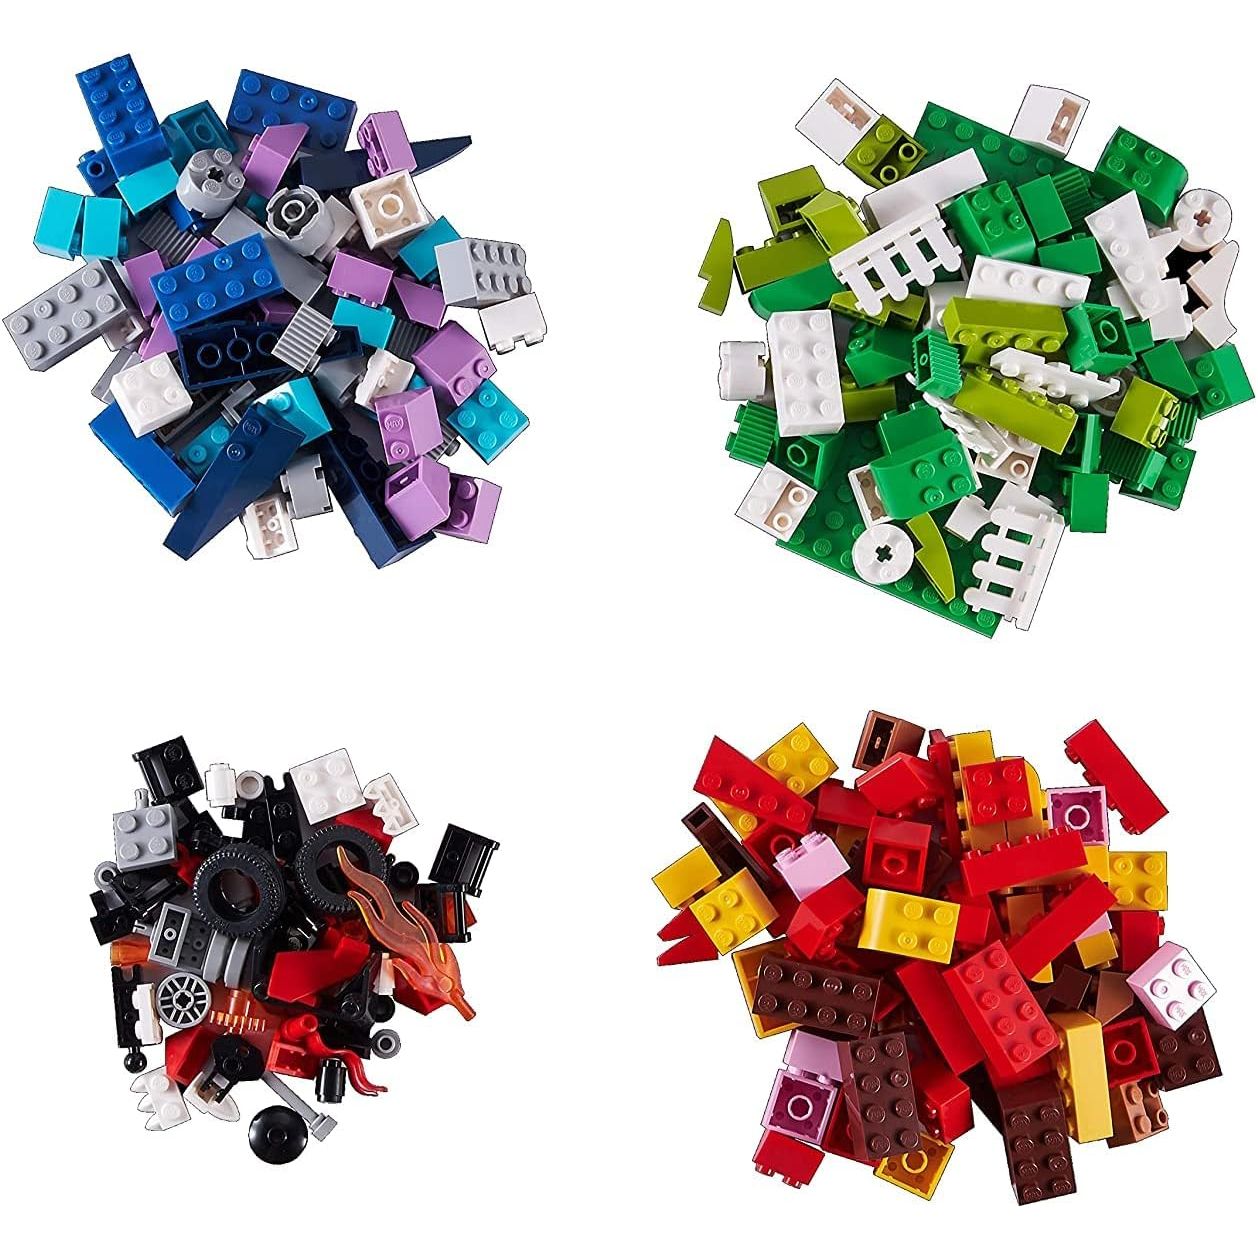 مجموعة مكعبات البناء ذات القيمة ماكس بيلد مور من زورو S002، 253 قطعة، متعددة الألوان